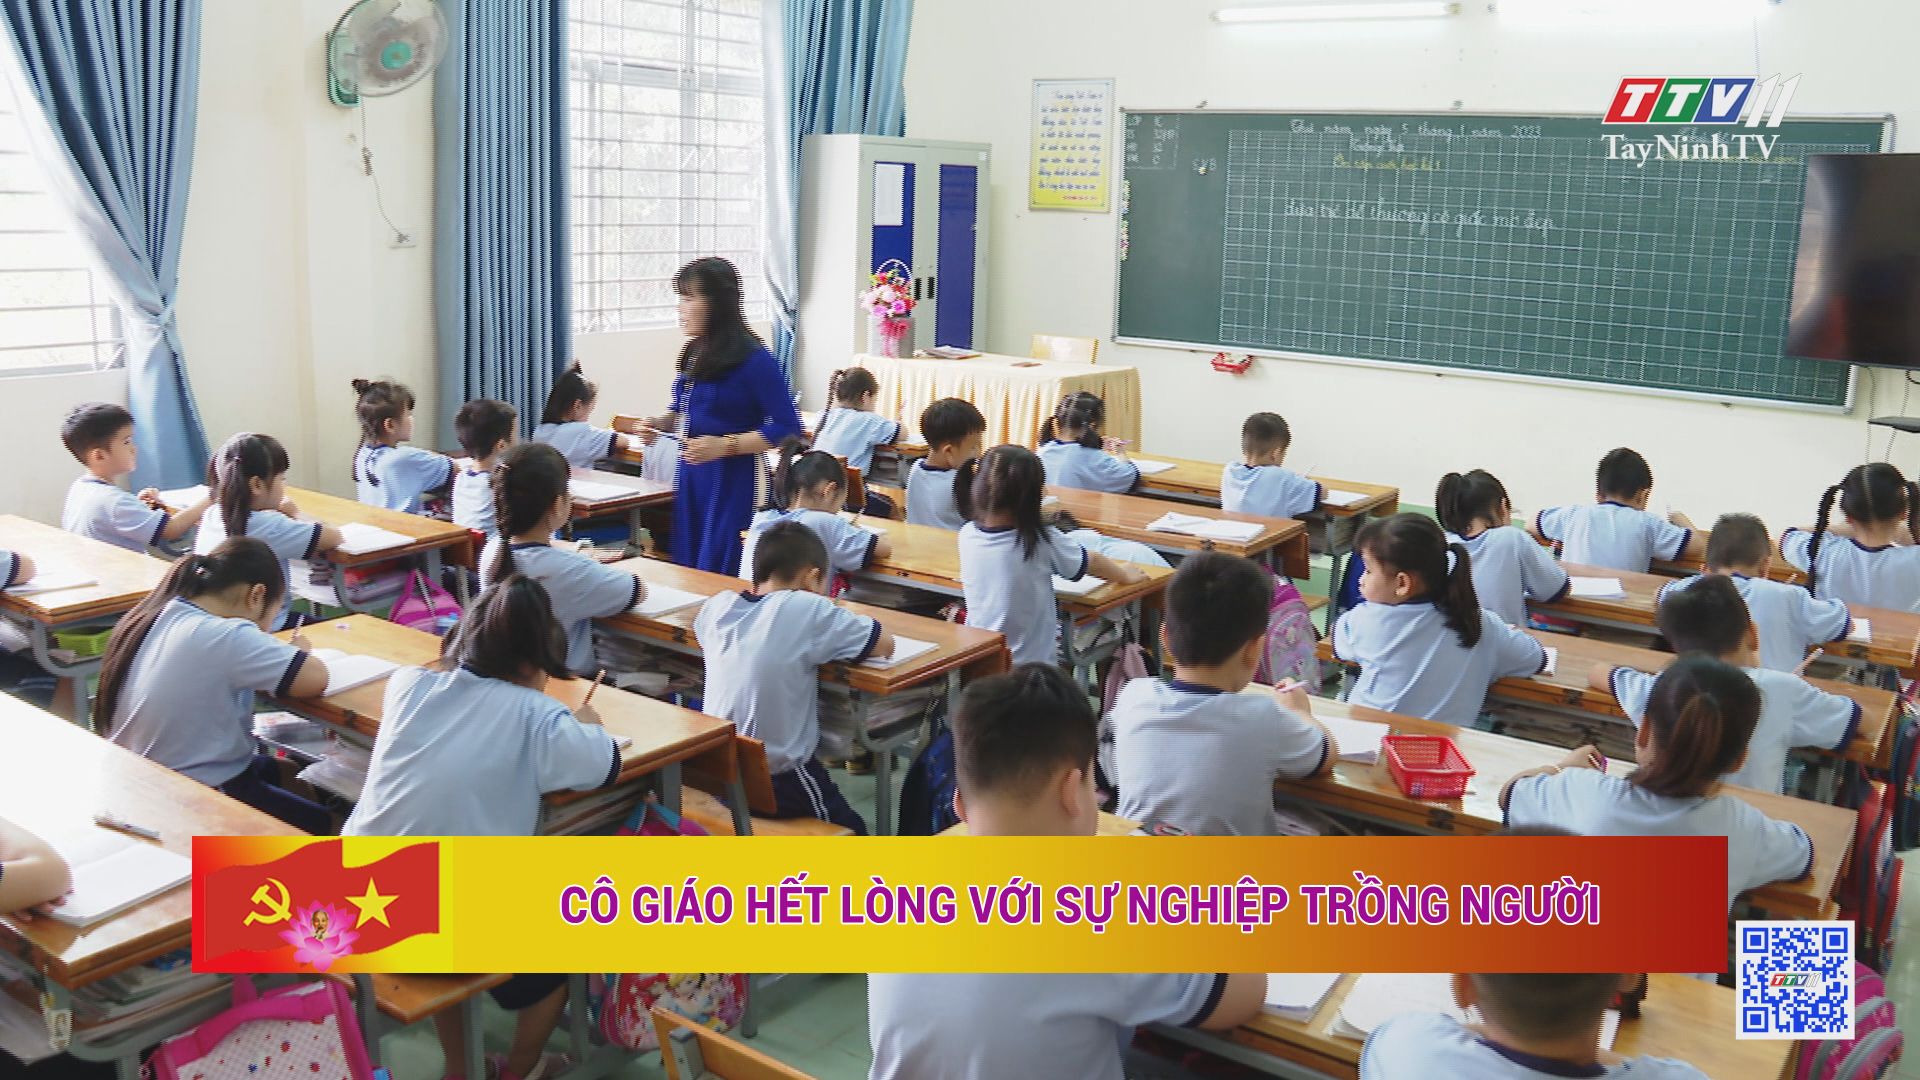 Cô giáo hết lòng với sự nghiệp trồng người | HỌC TẬP VÀ LÀM THEO ĐẠO ĐỨC, PHONG CÁCH HỒ CHÍ MINH | TayNinhTV